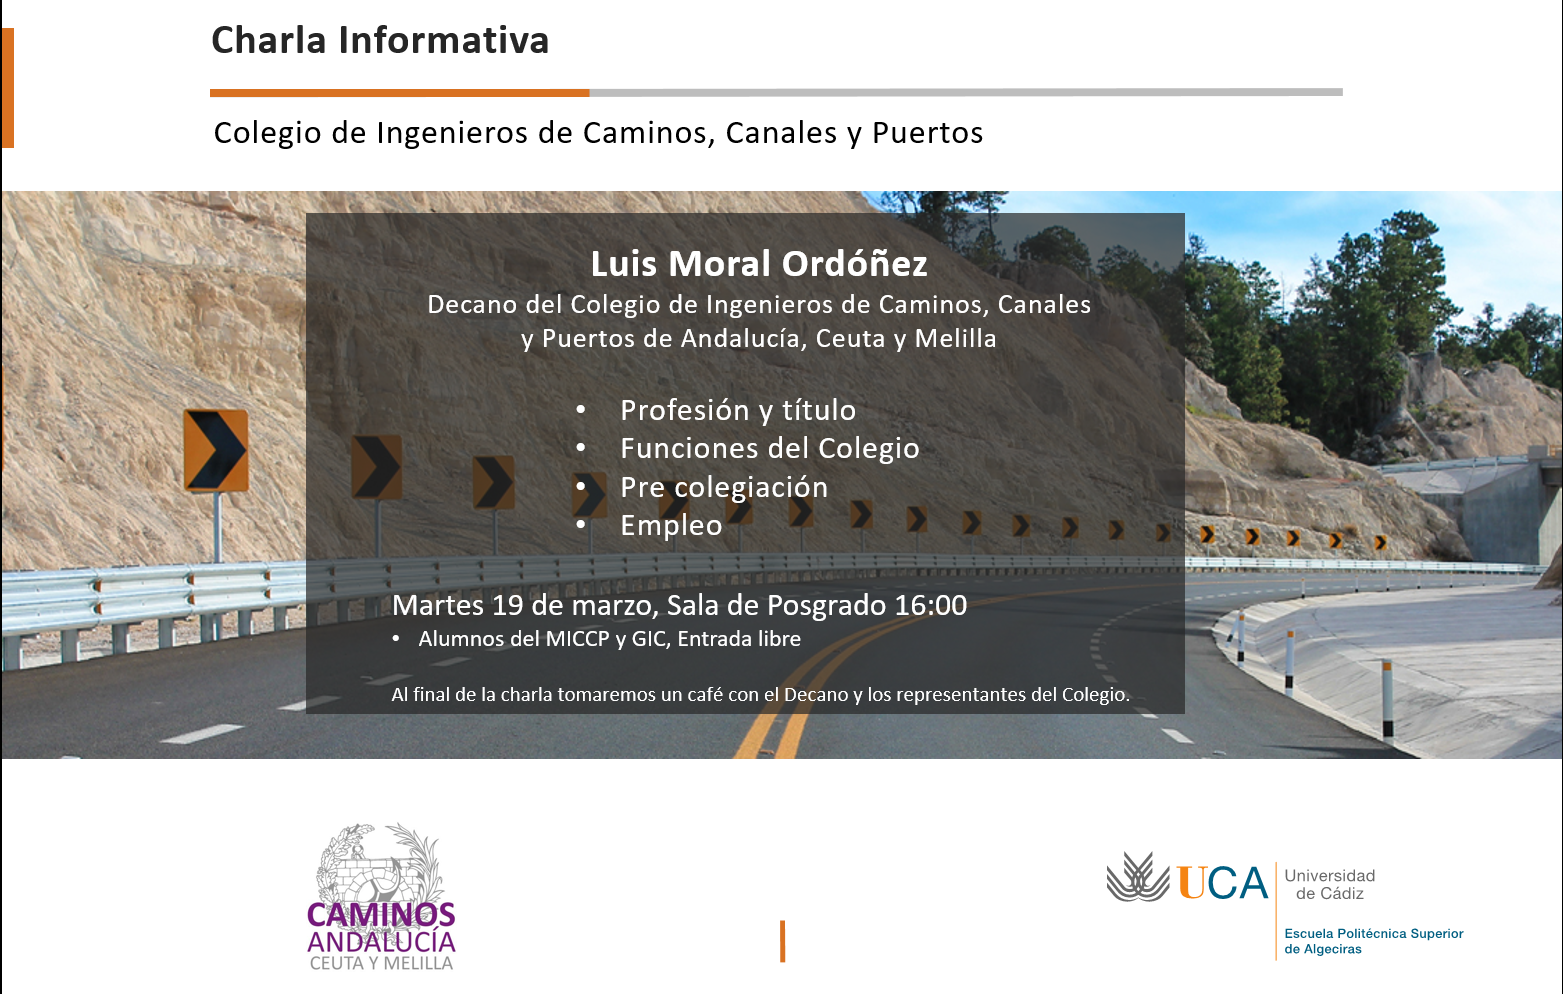 CHARLA INFORMATIVA. Colegio Ingenieros de Caminos, Canales y Puertos.